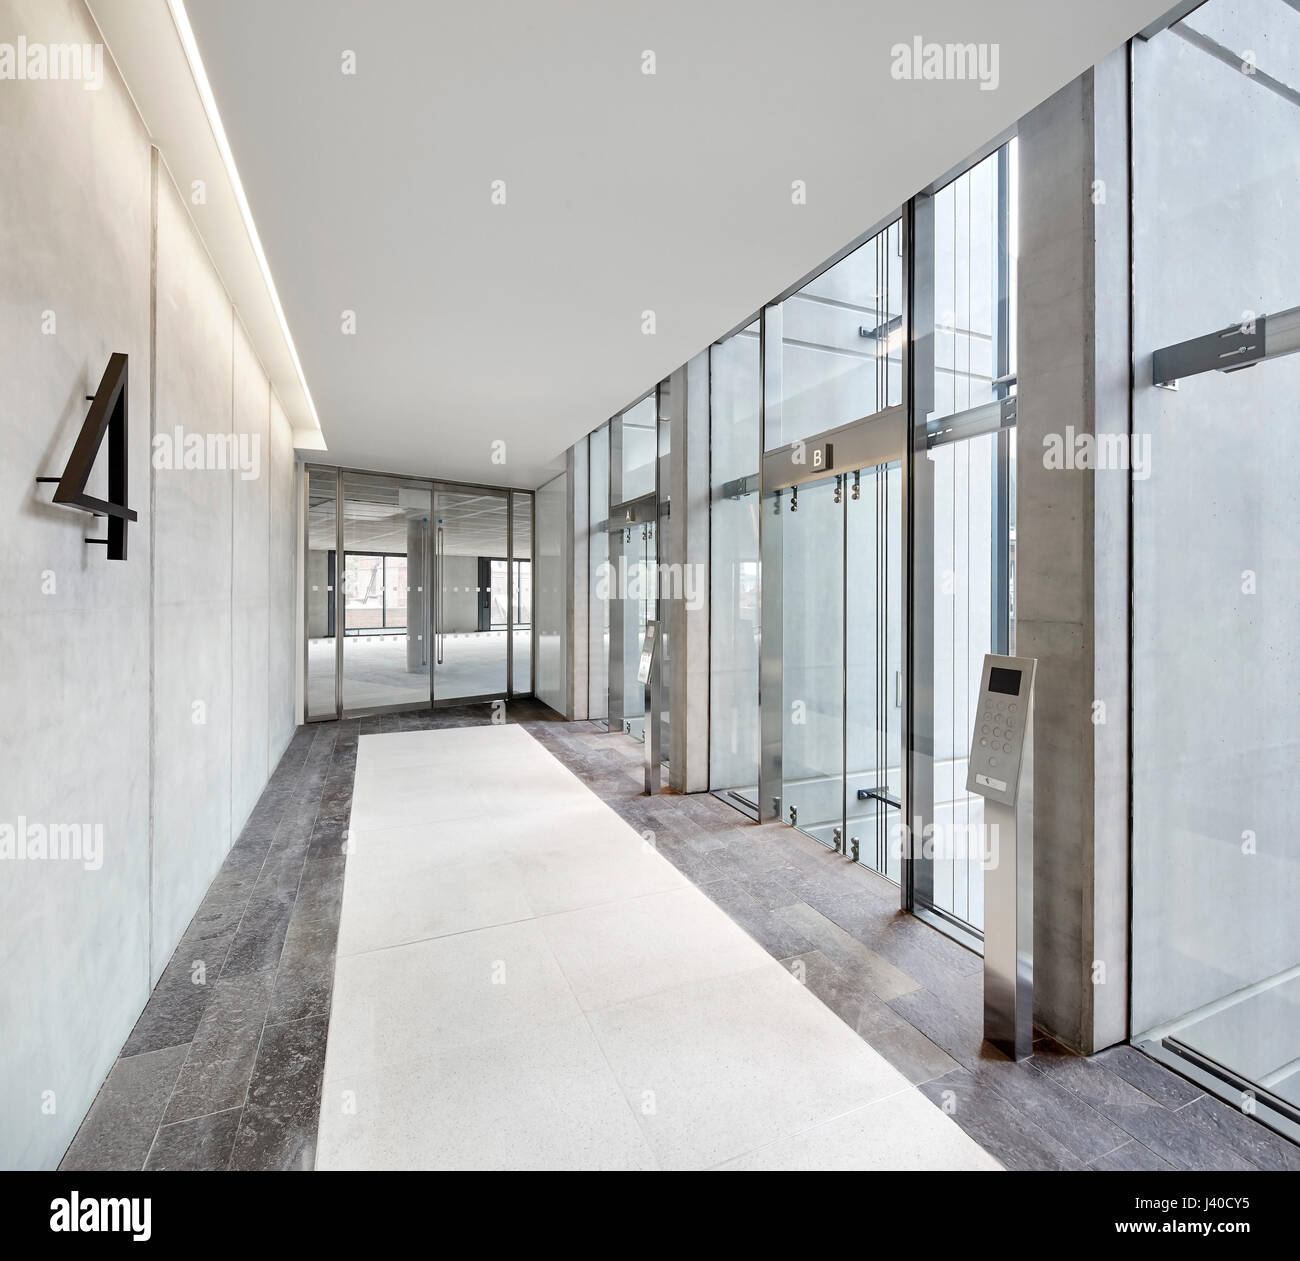 Aufzug-Korridor im 4. Stock. Chancery Lane, London, Vereinigtes Königreich. Architekt: Bennetts Associates Architects, 2015. Stockfoto